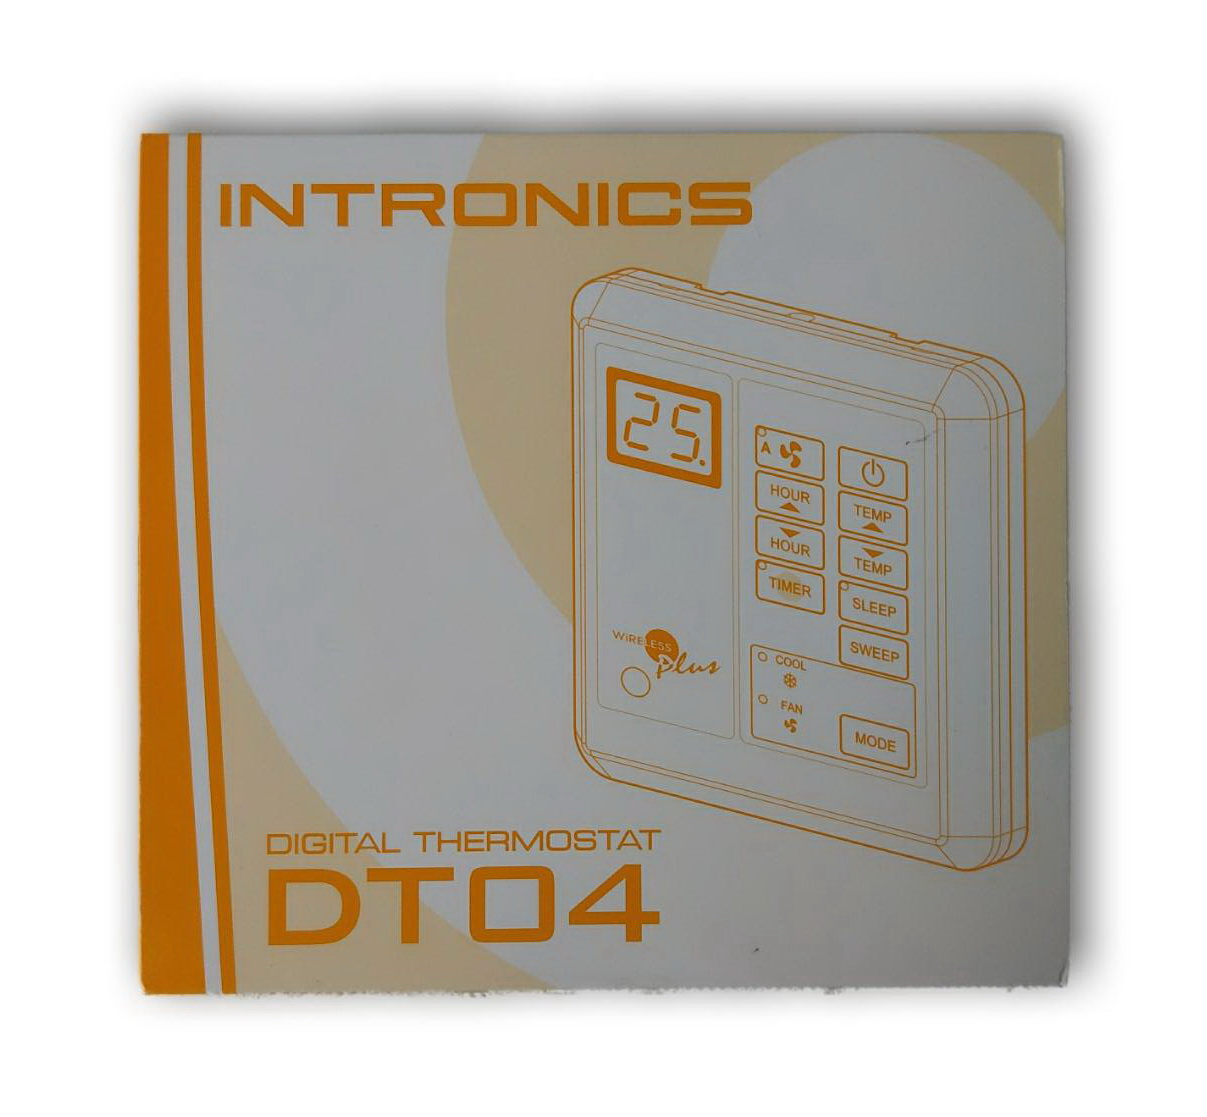 ภาพอธิบายเพิ่มเติมของ เทอร์โมสตัท, รูมแอร์, รีโมทคอนโทรล, เครื่องควบคุมอุณหภูมิ ชนิดมีสาย INTRONICS DT04 (220V)